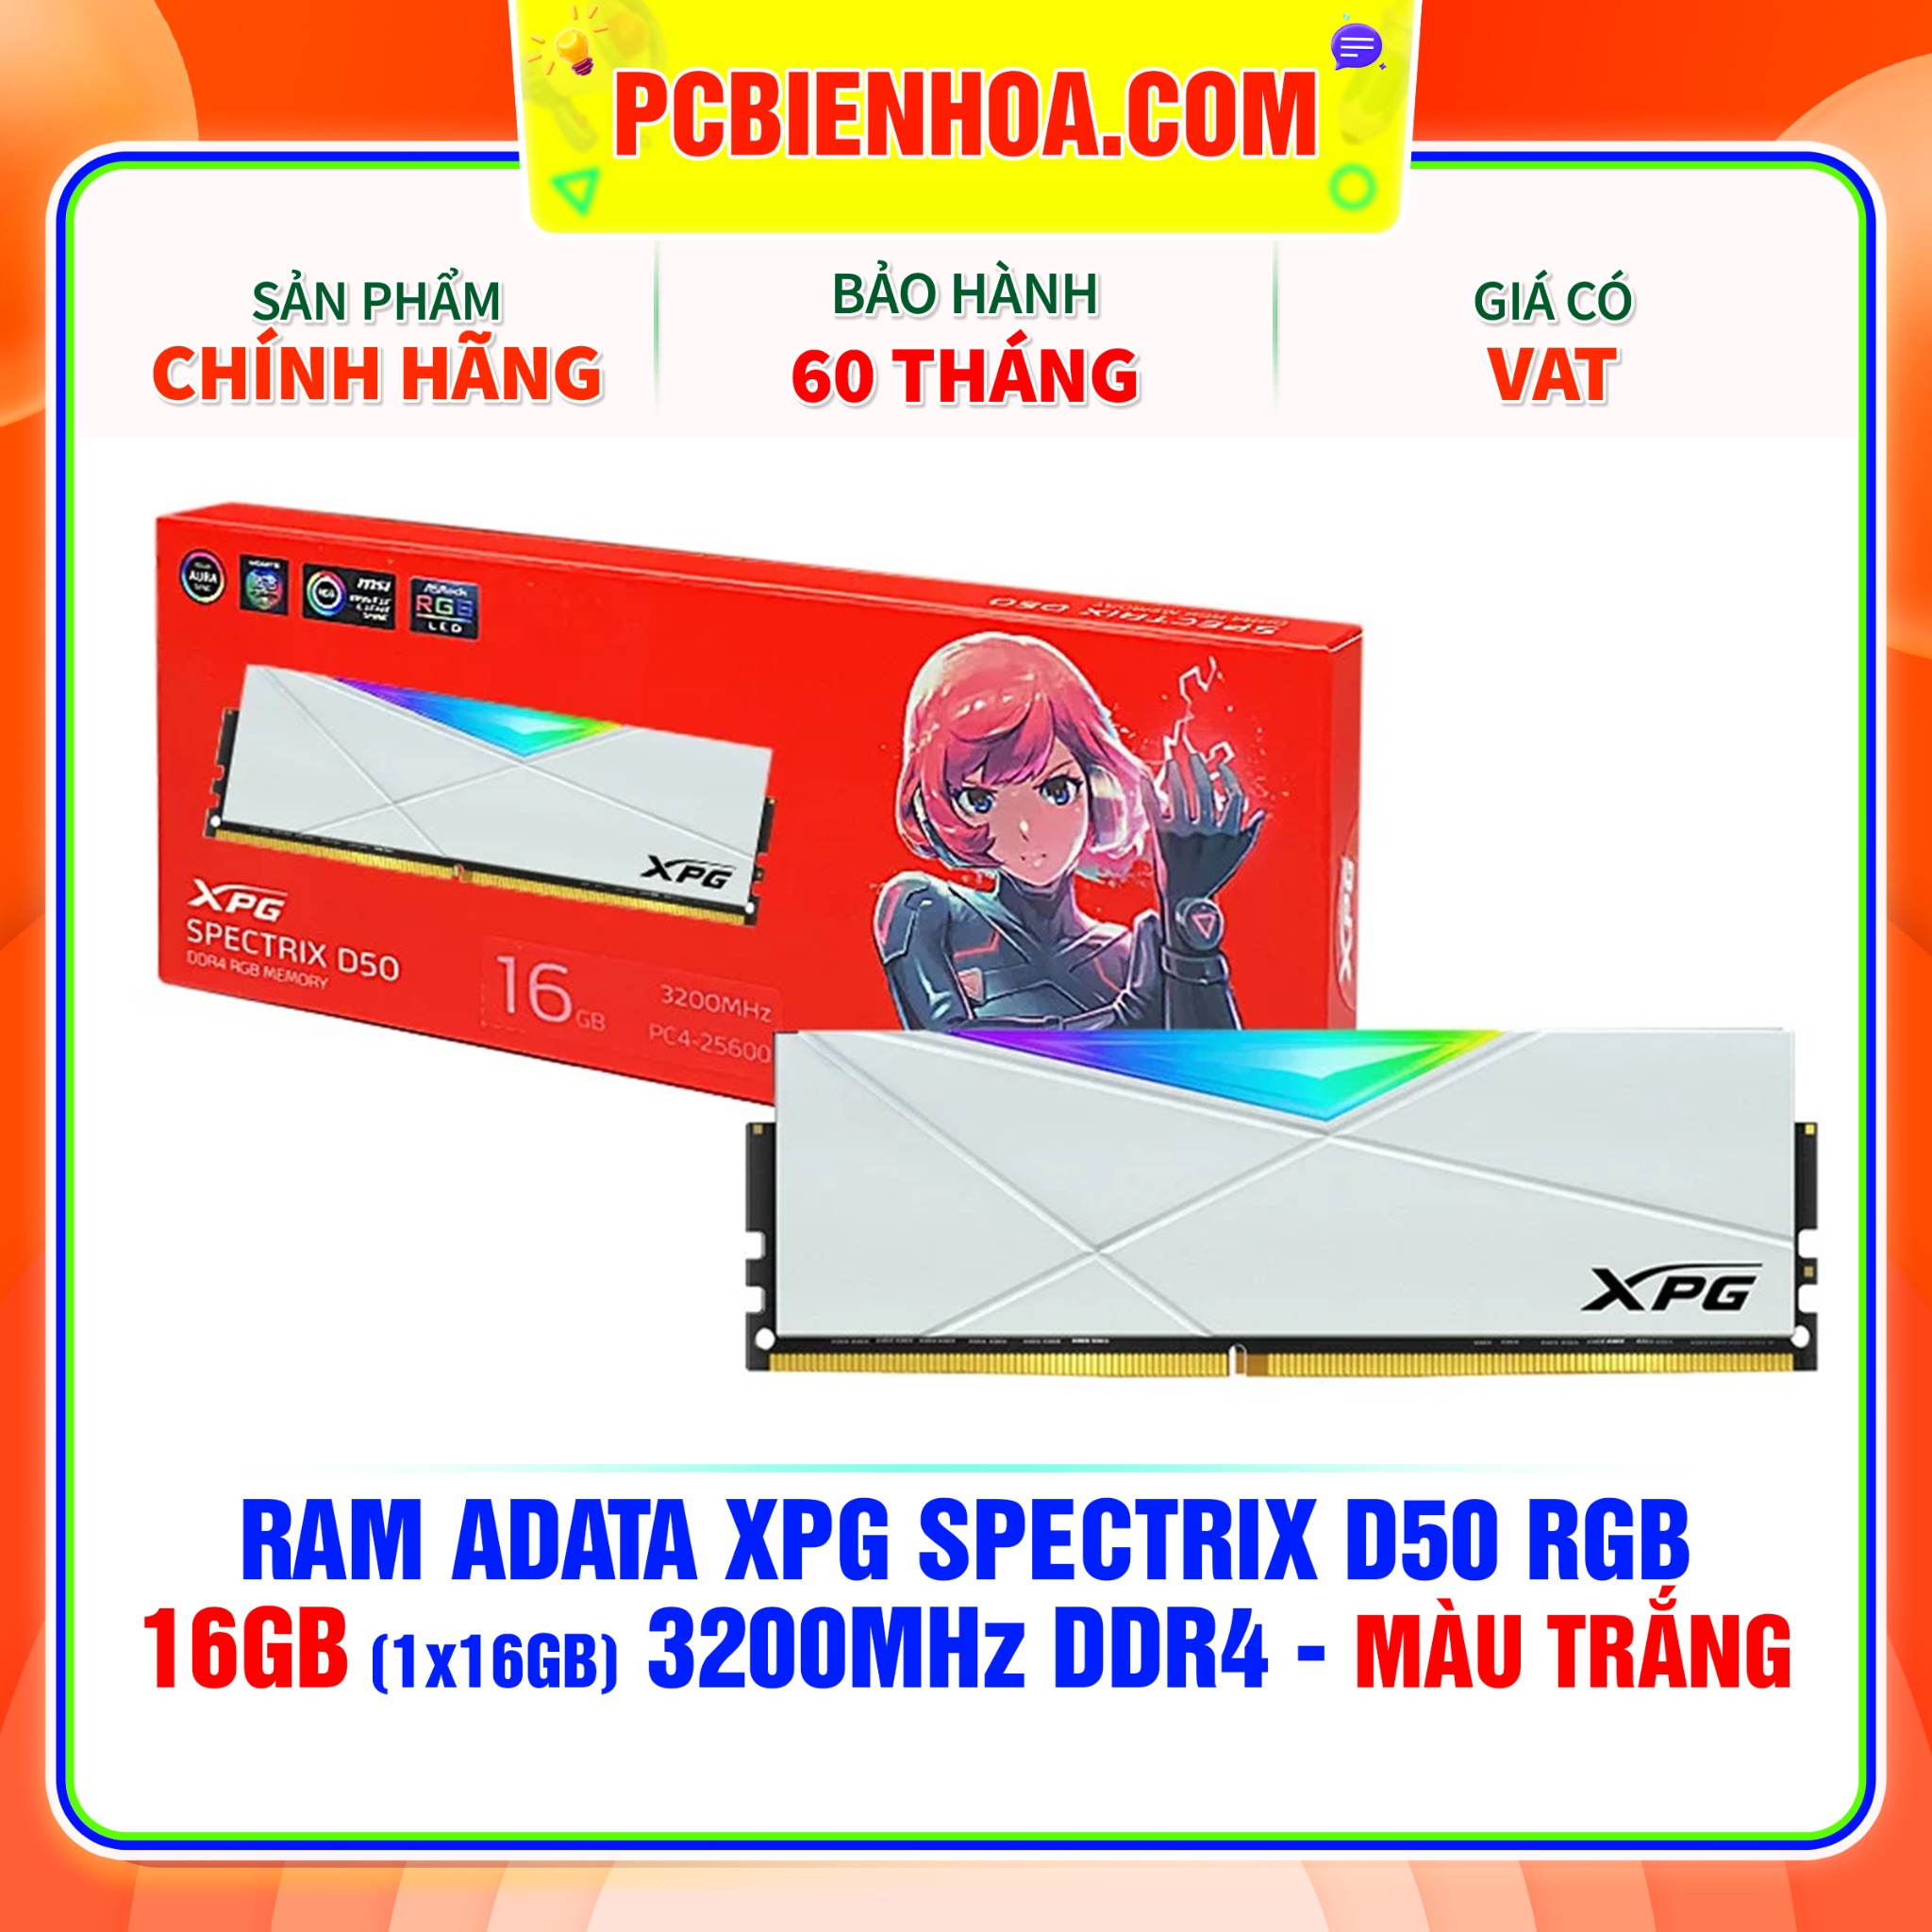 RAM ADATA XPG SPECTRIX D50 RGB - 16GB 3200MHZ DDR4 - MÀU TRẮNG